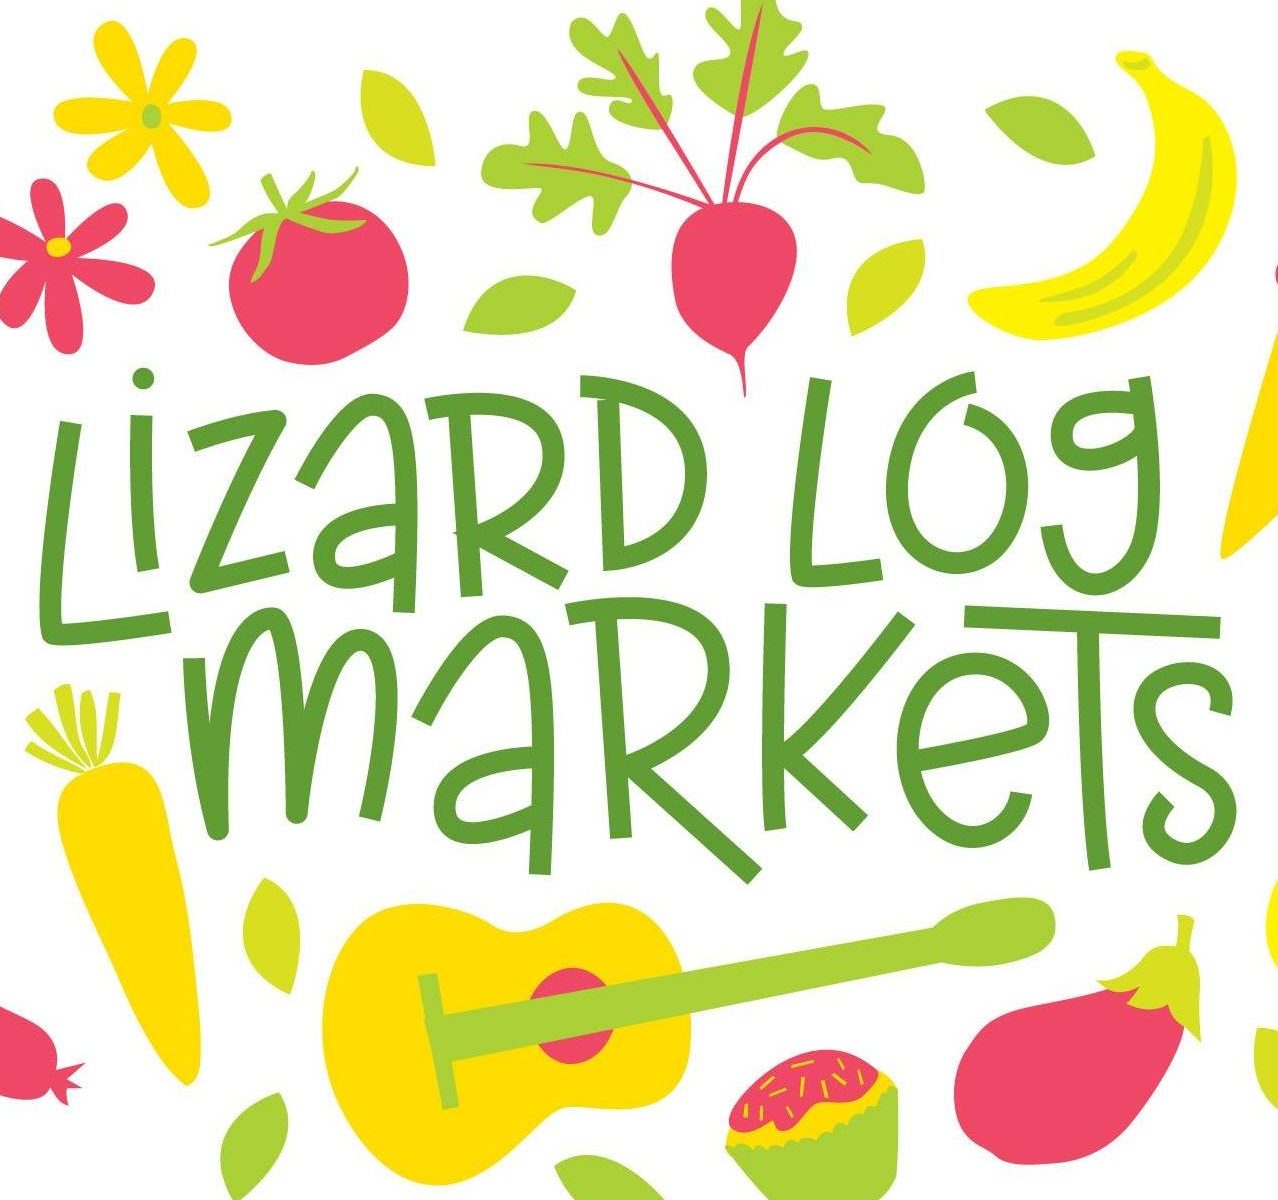 Lizard Log Markets